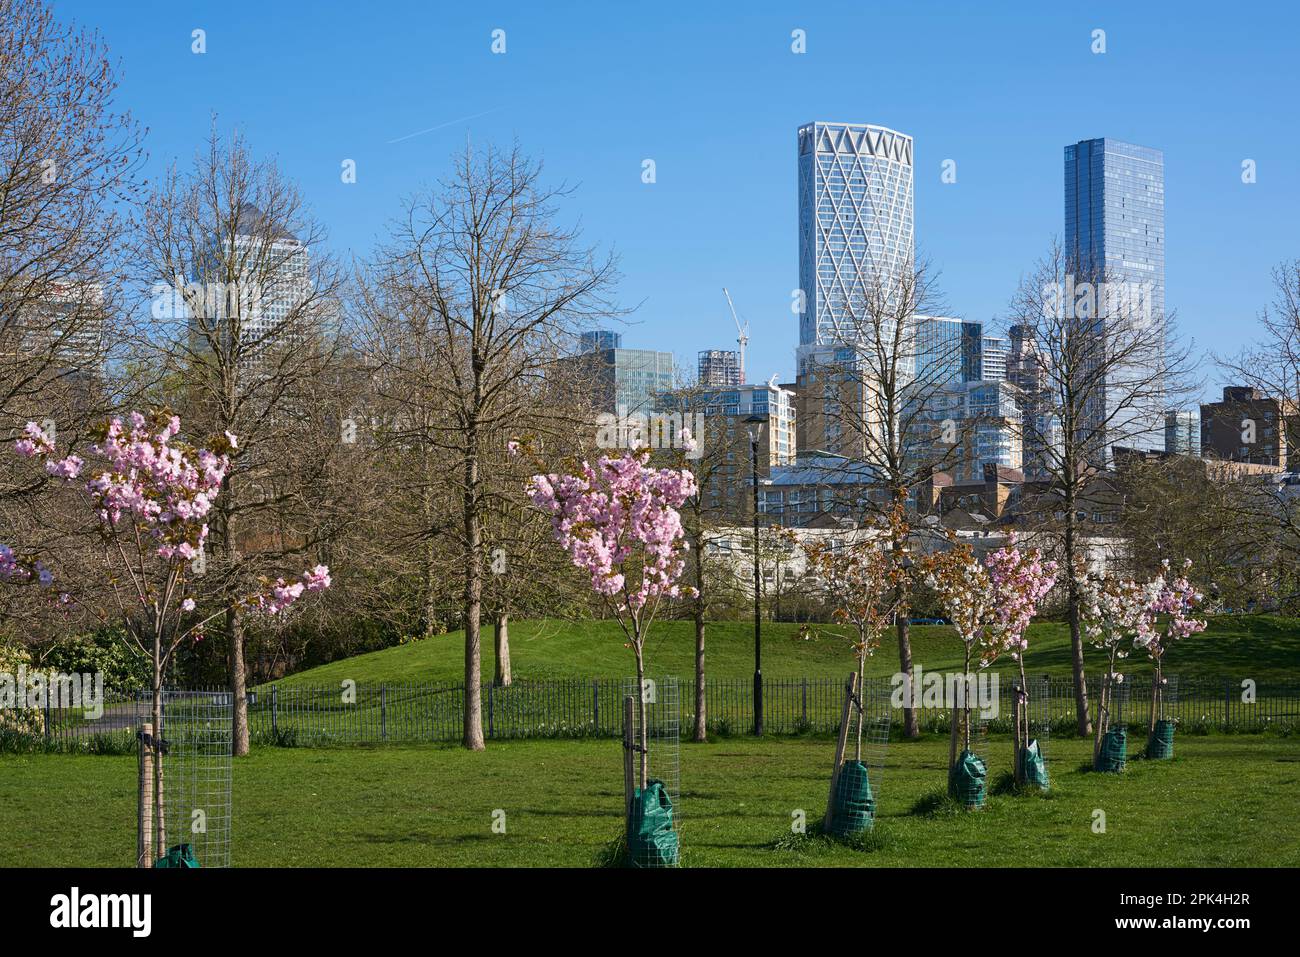 Ropemaker's Field, près de Limehouse, Londres Docklands UK, au printemps, en regardant vers Canary Wharf Banque D'Images